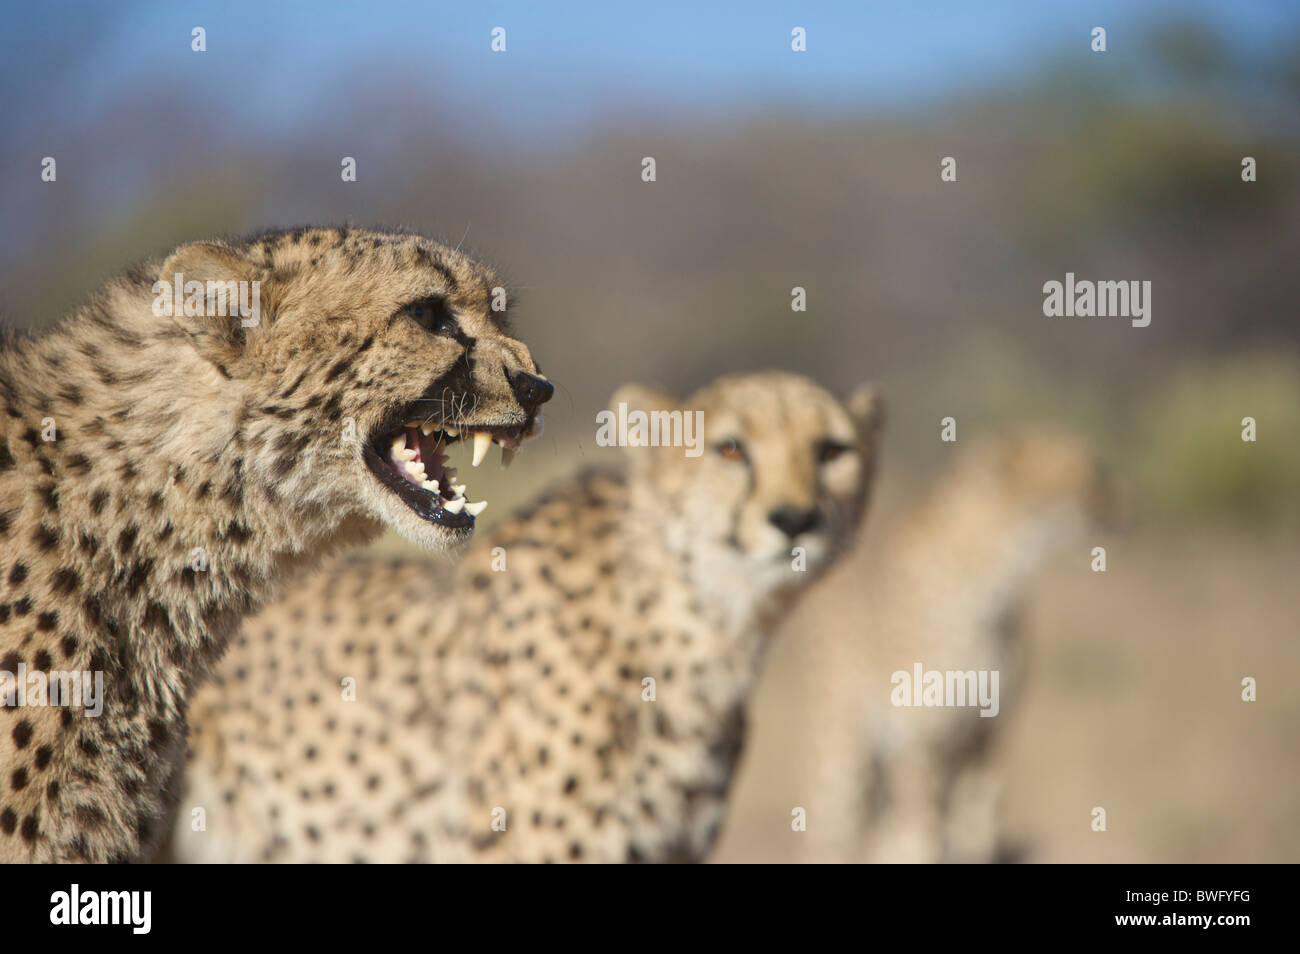 Le Guépard (Acinonyx jubatus) grondant avec d'autres en arrière-plan, la Namibie Banque D'Images